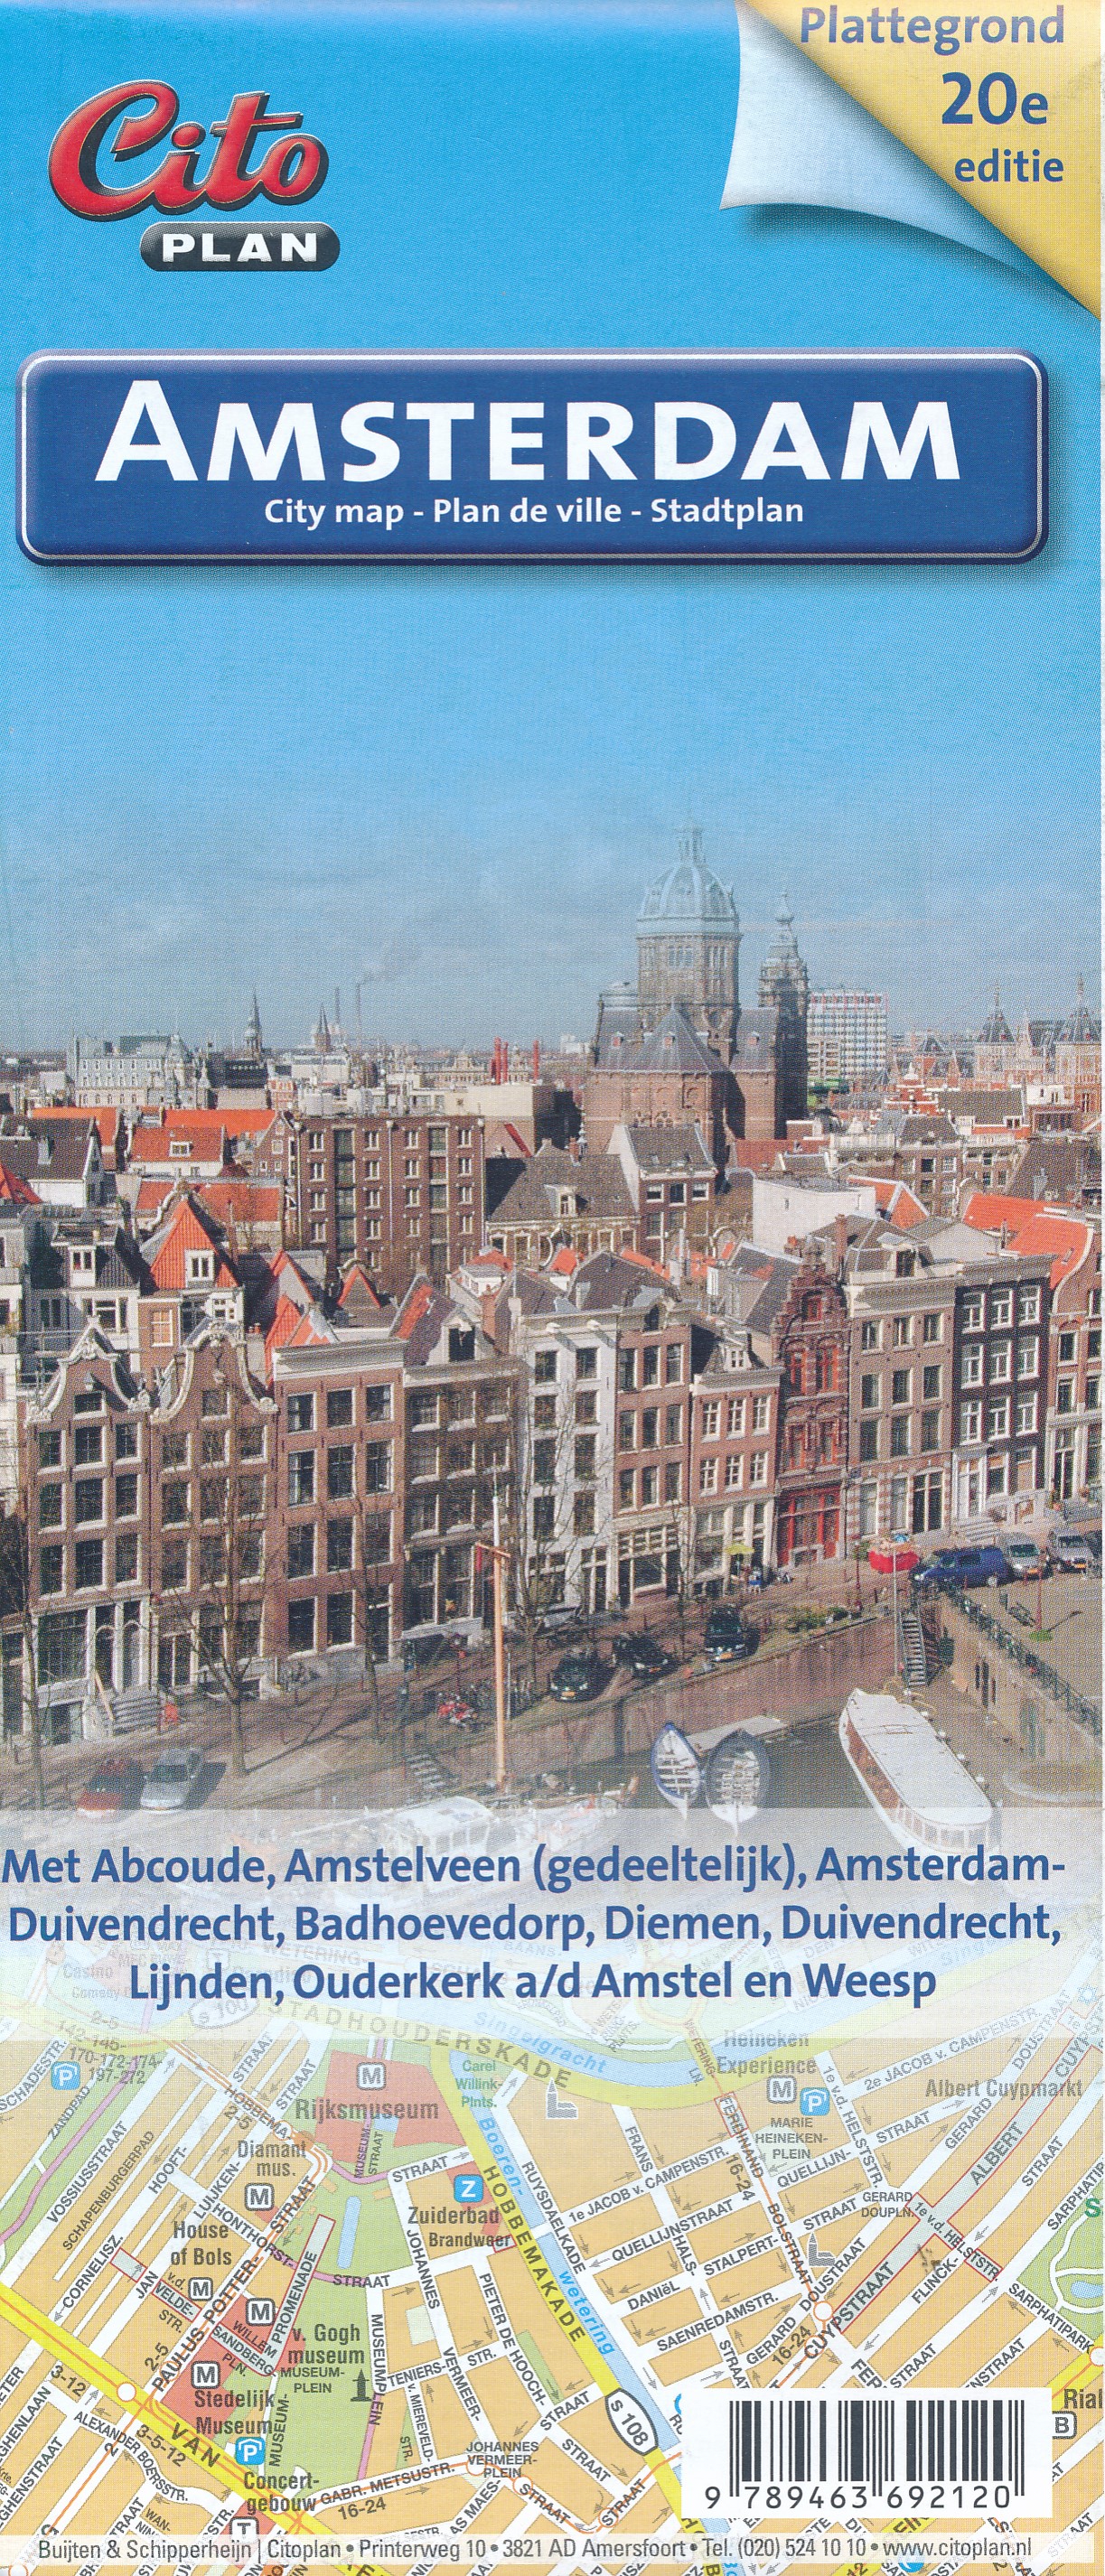 Online bestellen: Stadsplattegrond Citoplan Amsterdam | Buijten & Schipperheijn